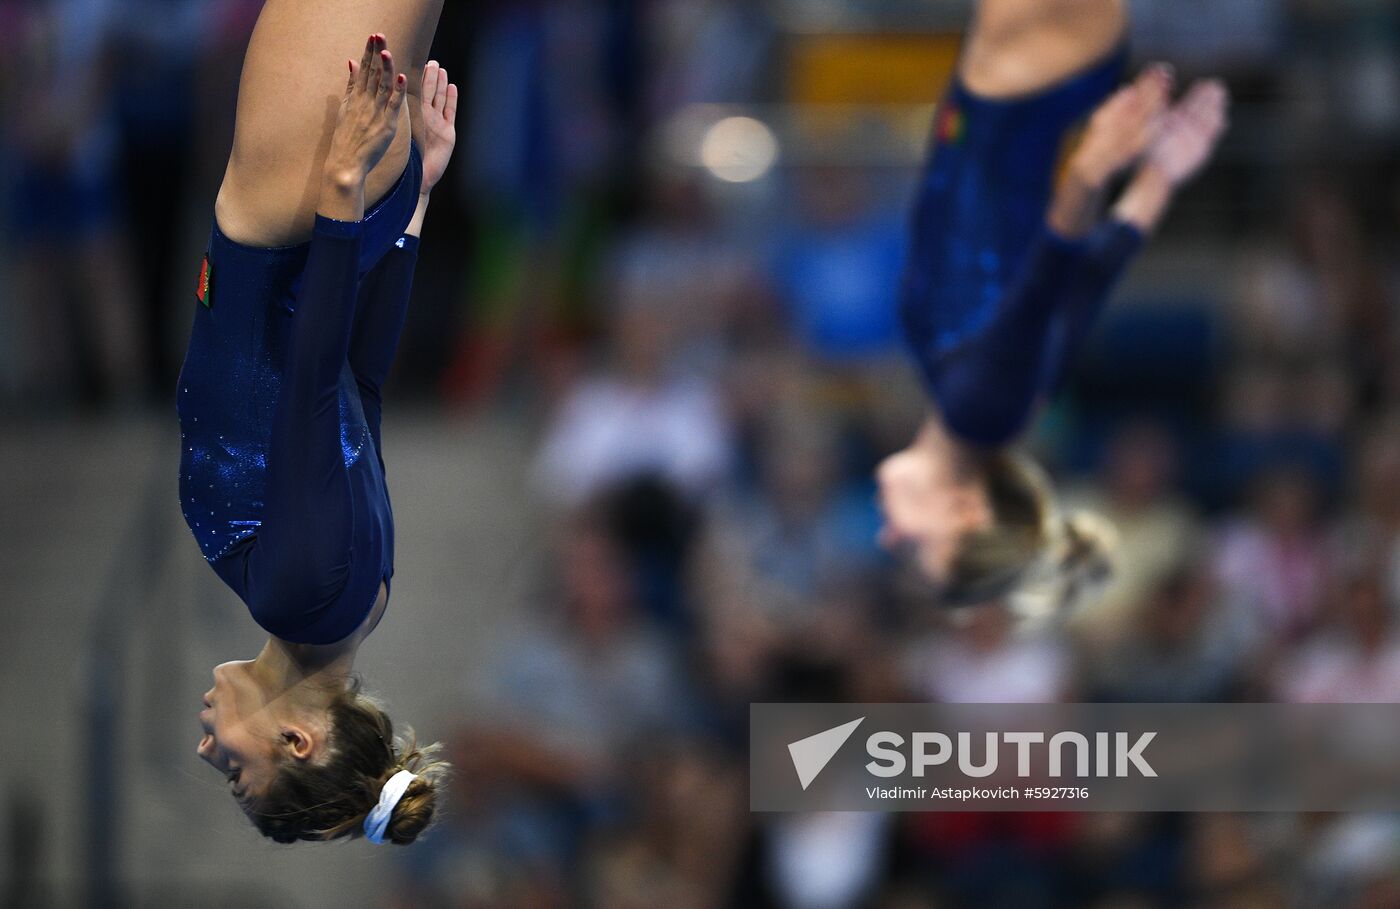 Belarus Games Trampoline Gymnastics Sputnik Mediabank